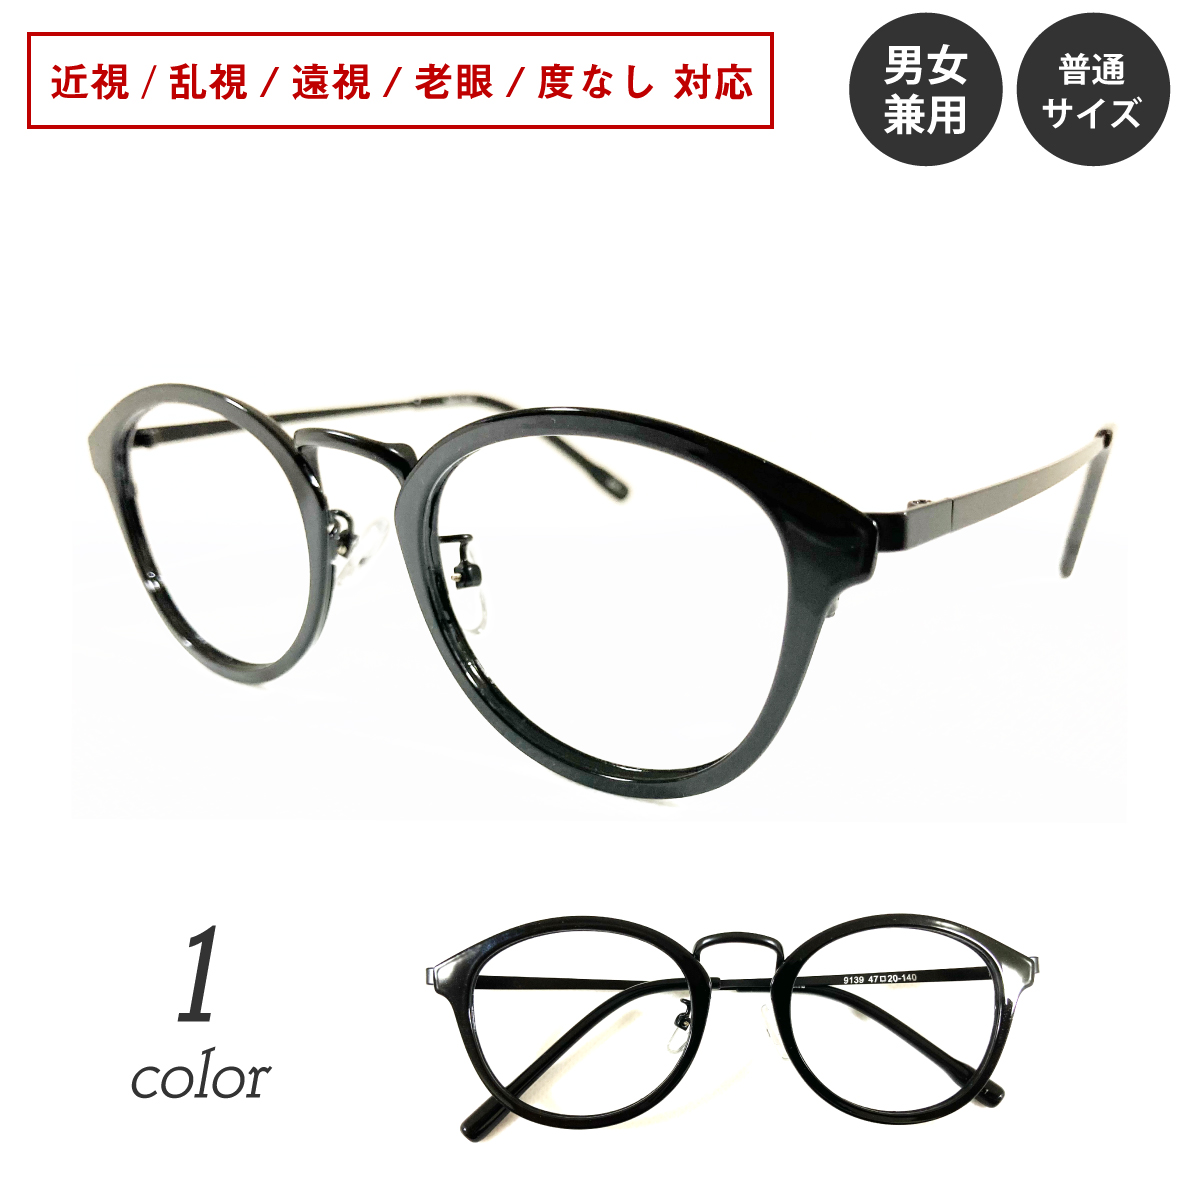 1494円 ついに再販開始 メガネ 度付き レディース ボストン メンズ 眼鏡 度付きメガネ おしゃれ 鼻あて メタル コンビ クラシック メガネケース メガネ拭き セット レンズ代込み